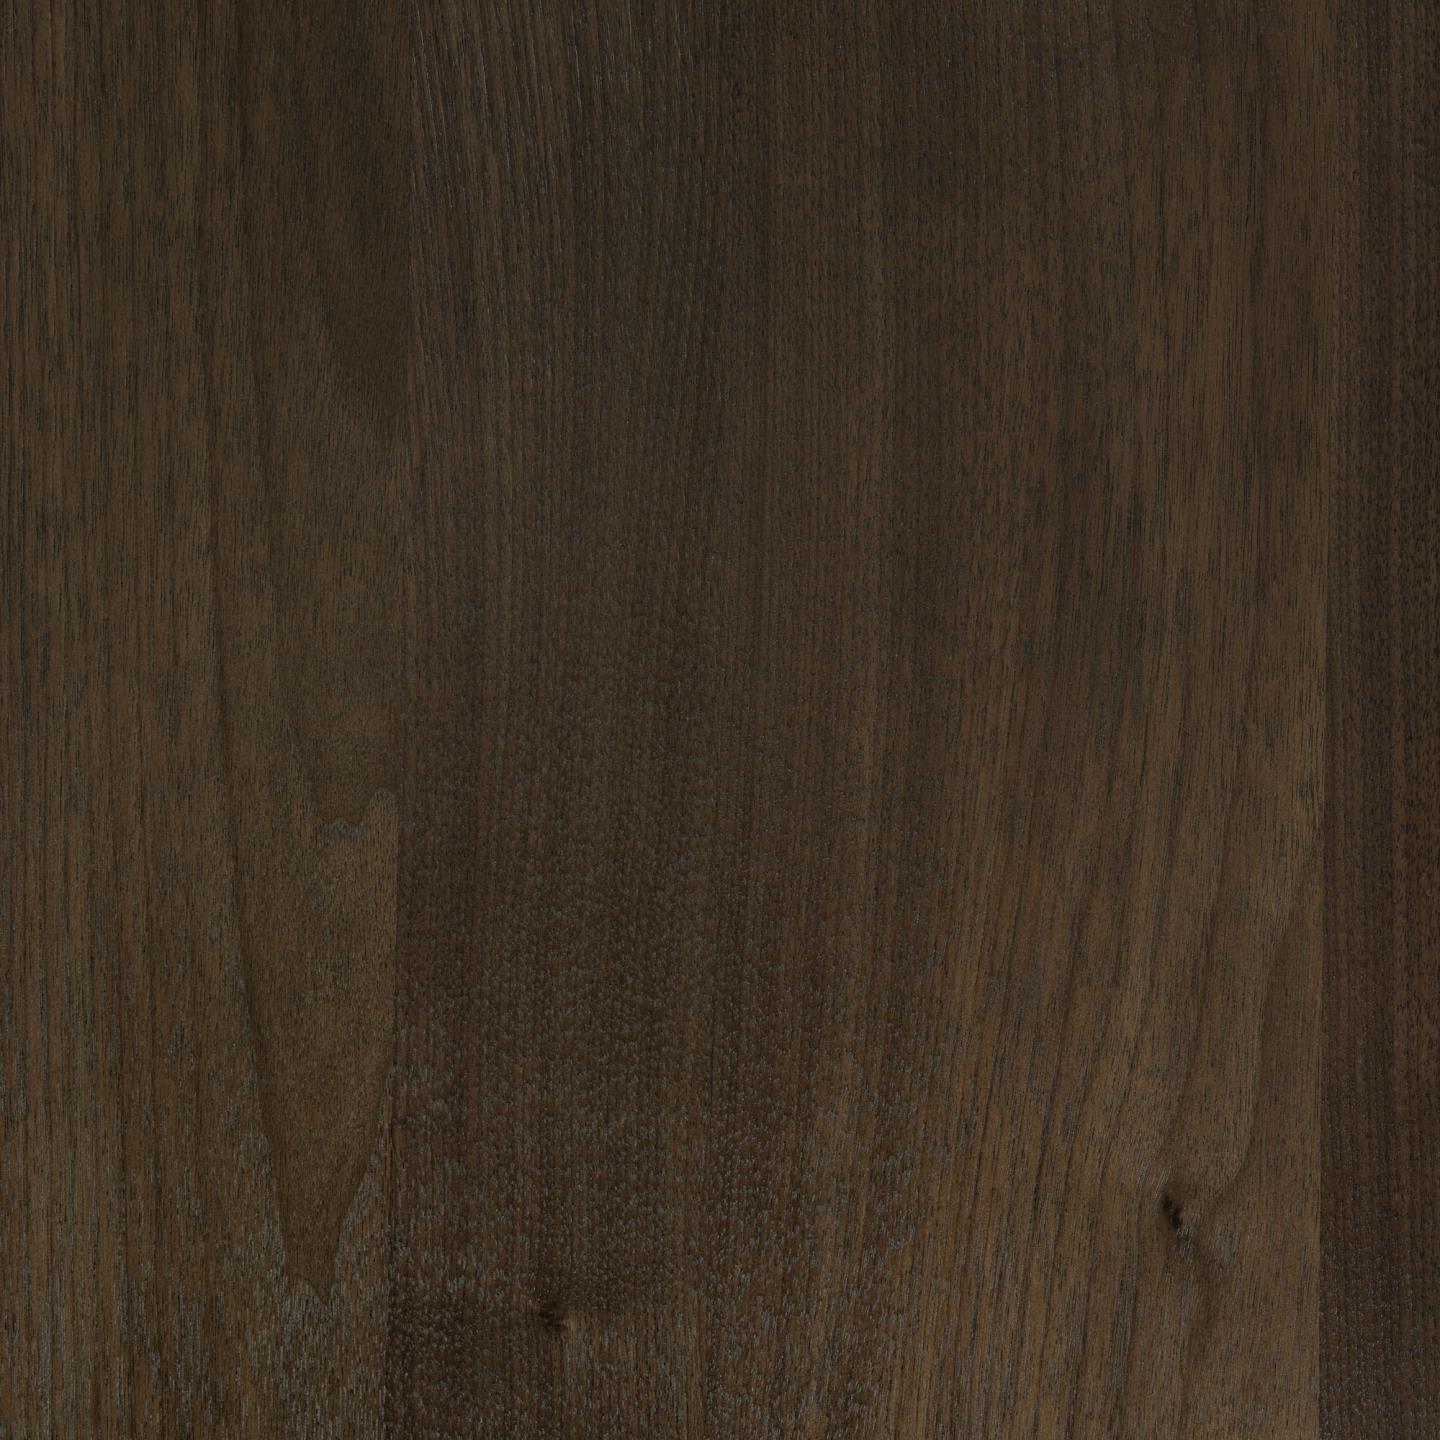 Kave Home Cutt Kommode 120 x 91 cm mit amerikanischem Walnussfurnier Natur, Braun- #CC1905M01